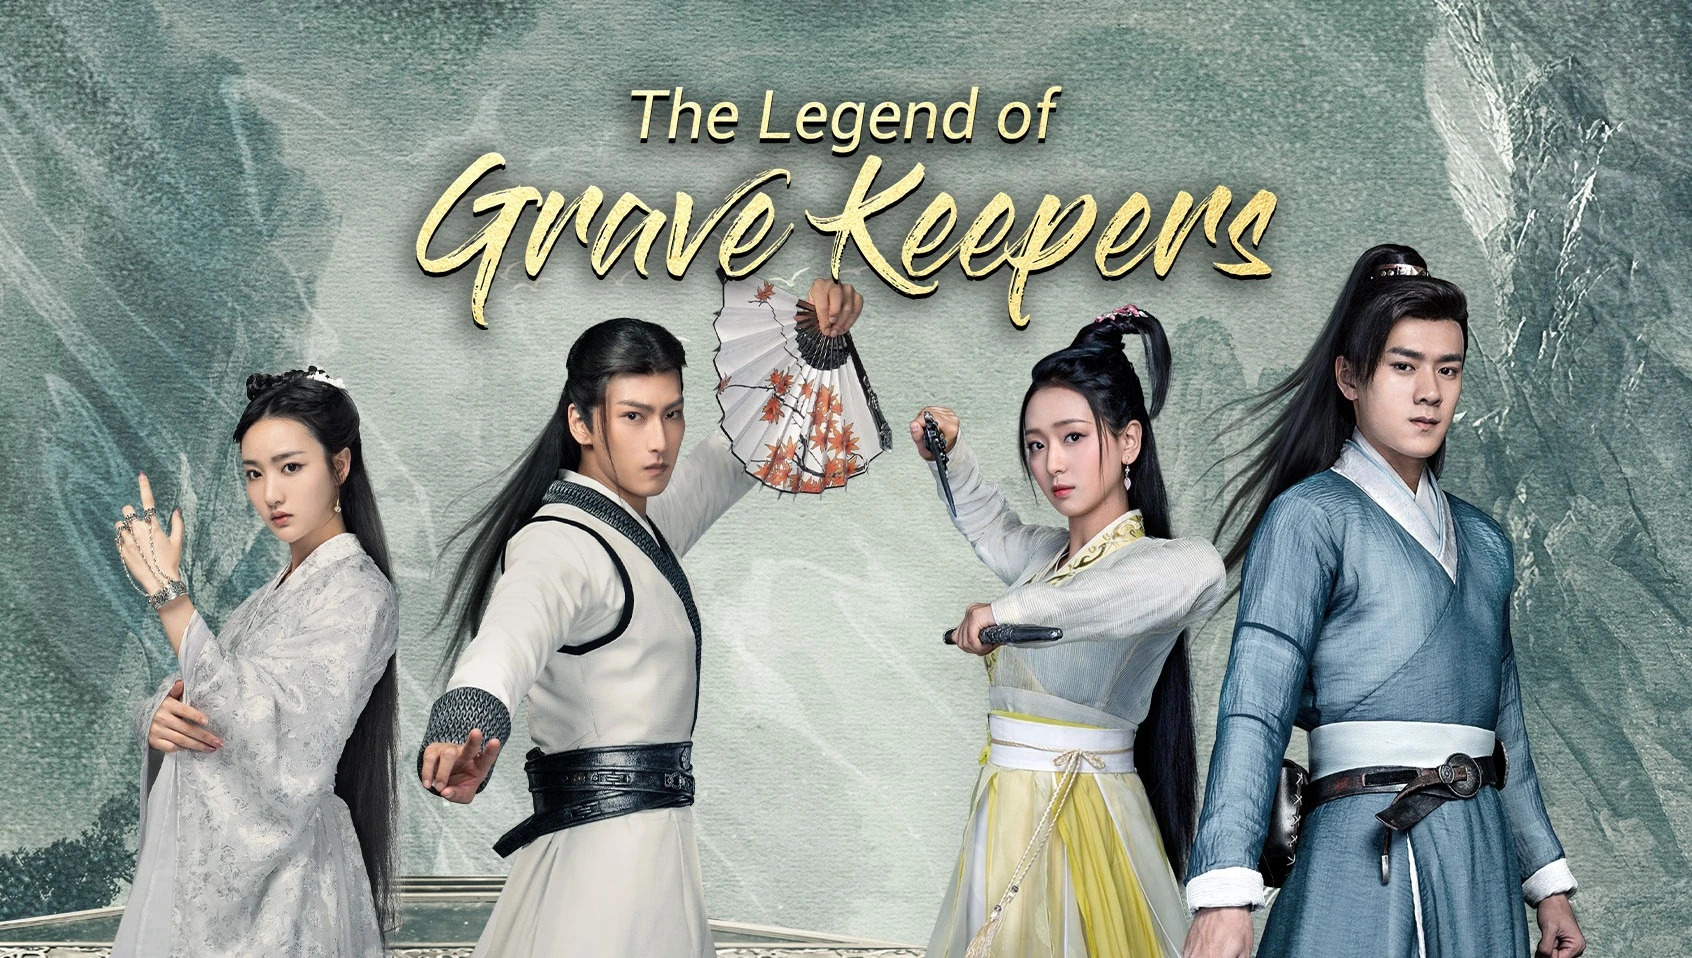 ดูซีรี่ย์จีน The Legend of Grave Keepers (2021) ราชาแห่งสุสาน ซับไทย